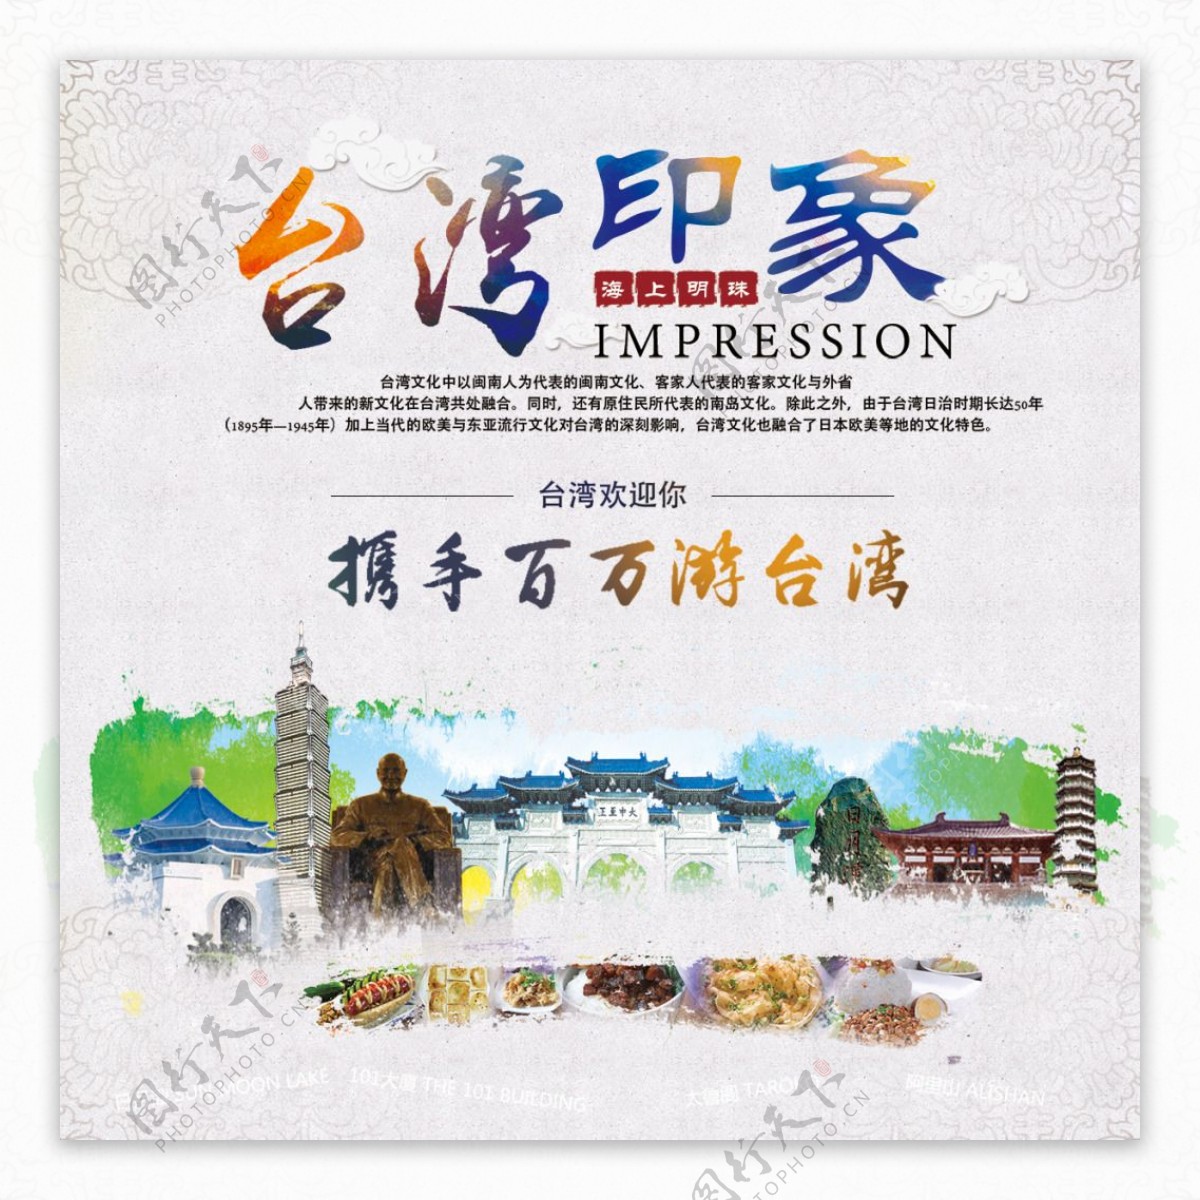 台湾印象旅游海报